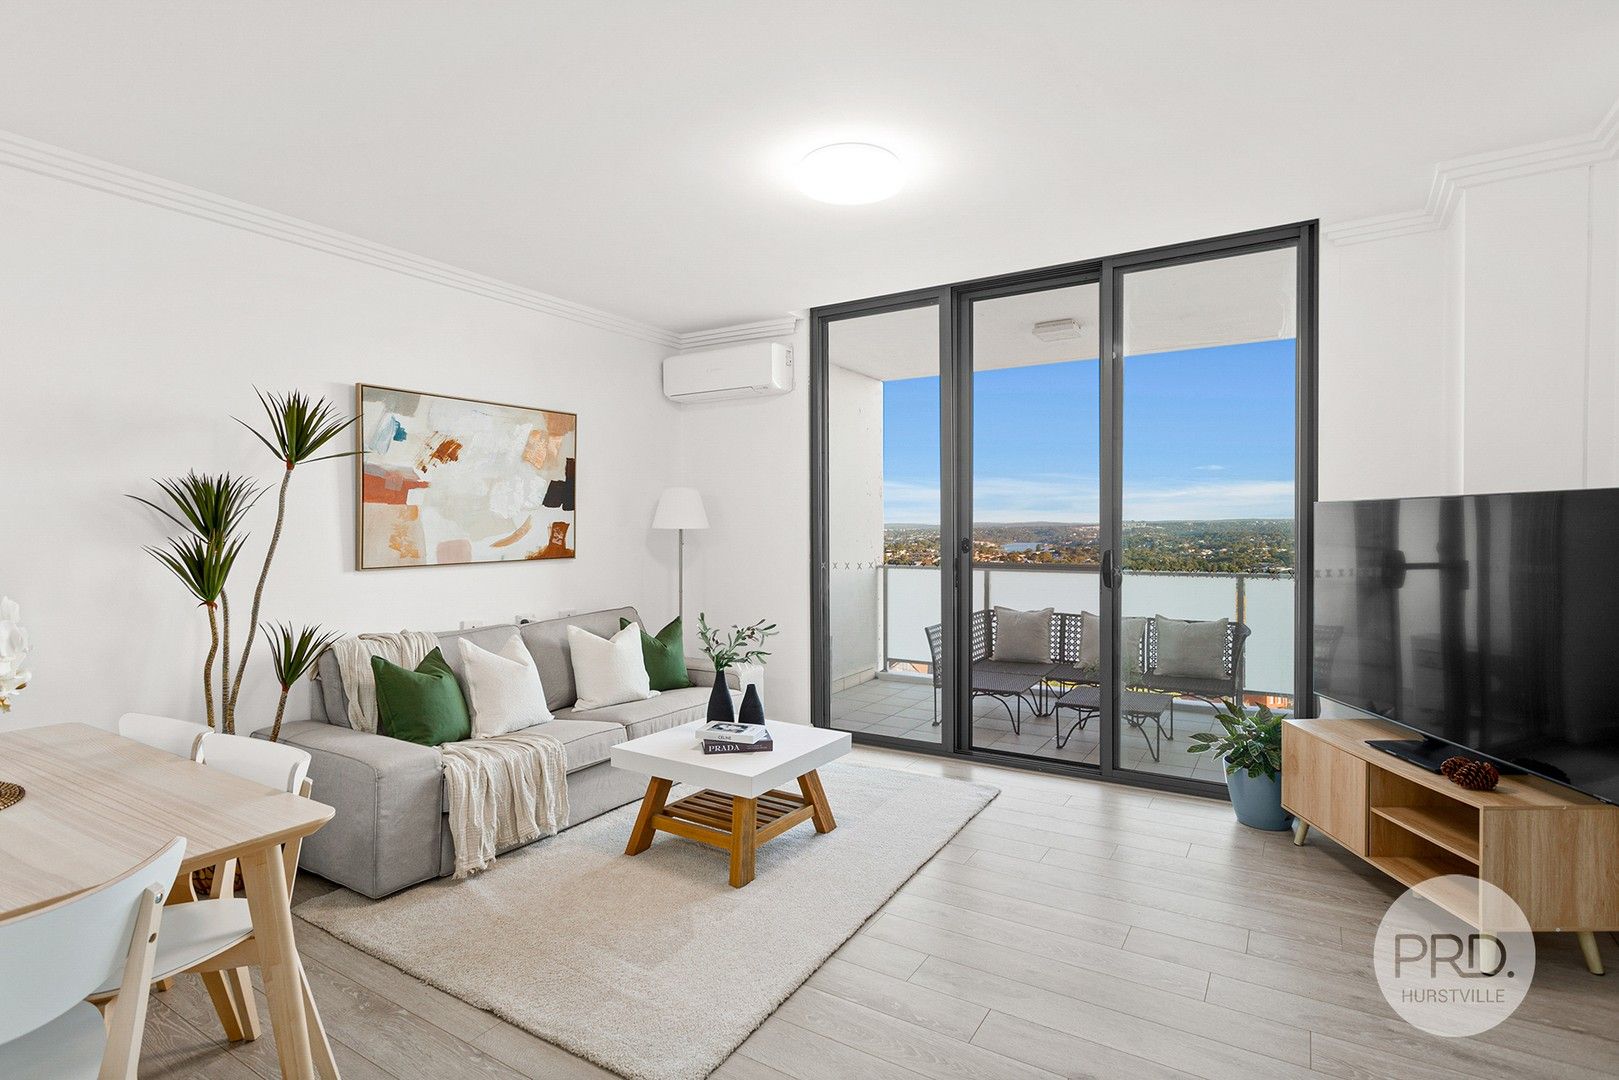 2 bedrooms Apartment / Unit / Flat in 60/32 Woniora Road HURSTVILLE NSW, 2220